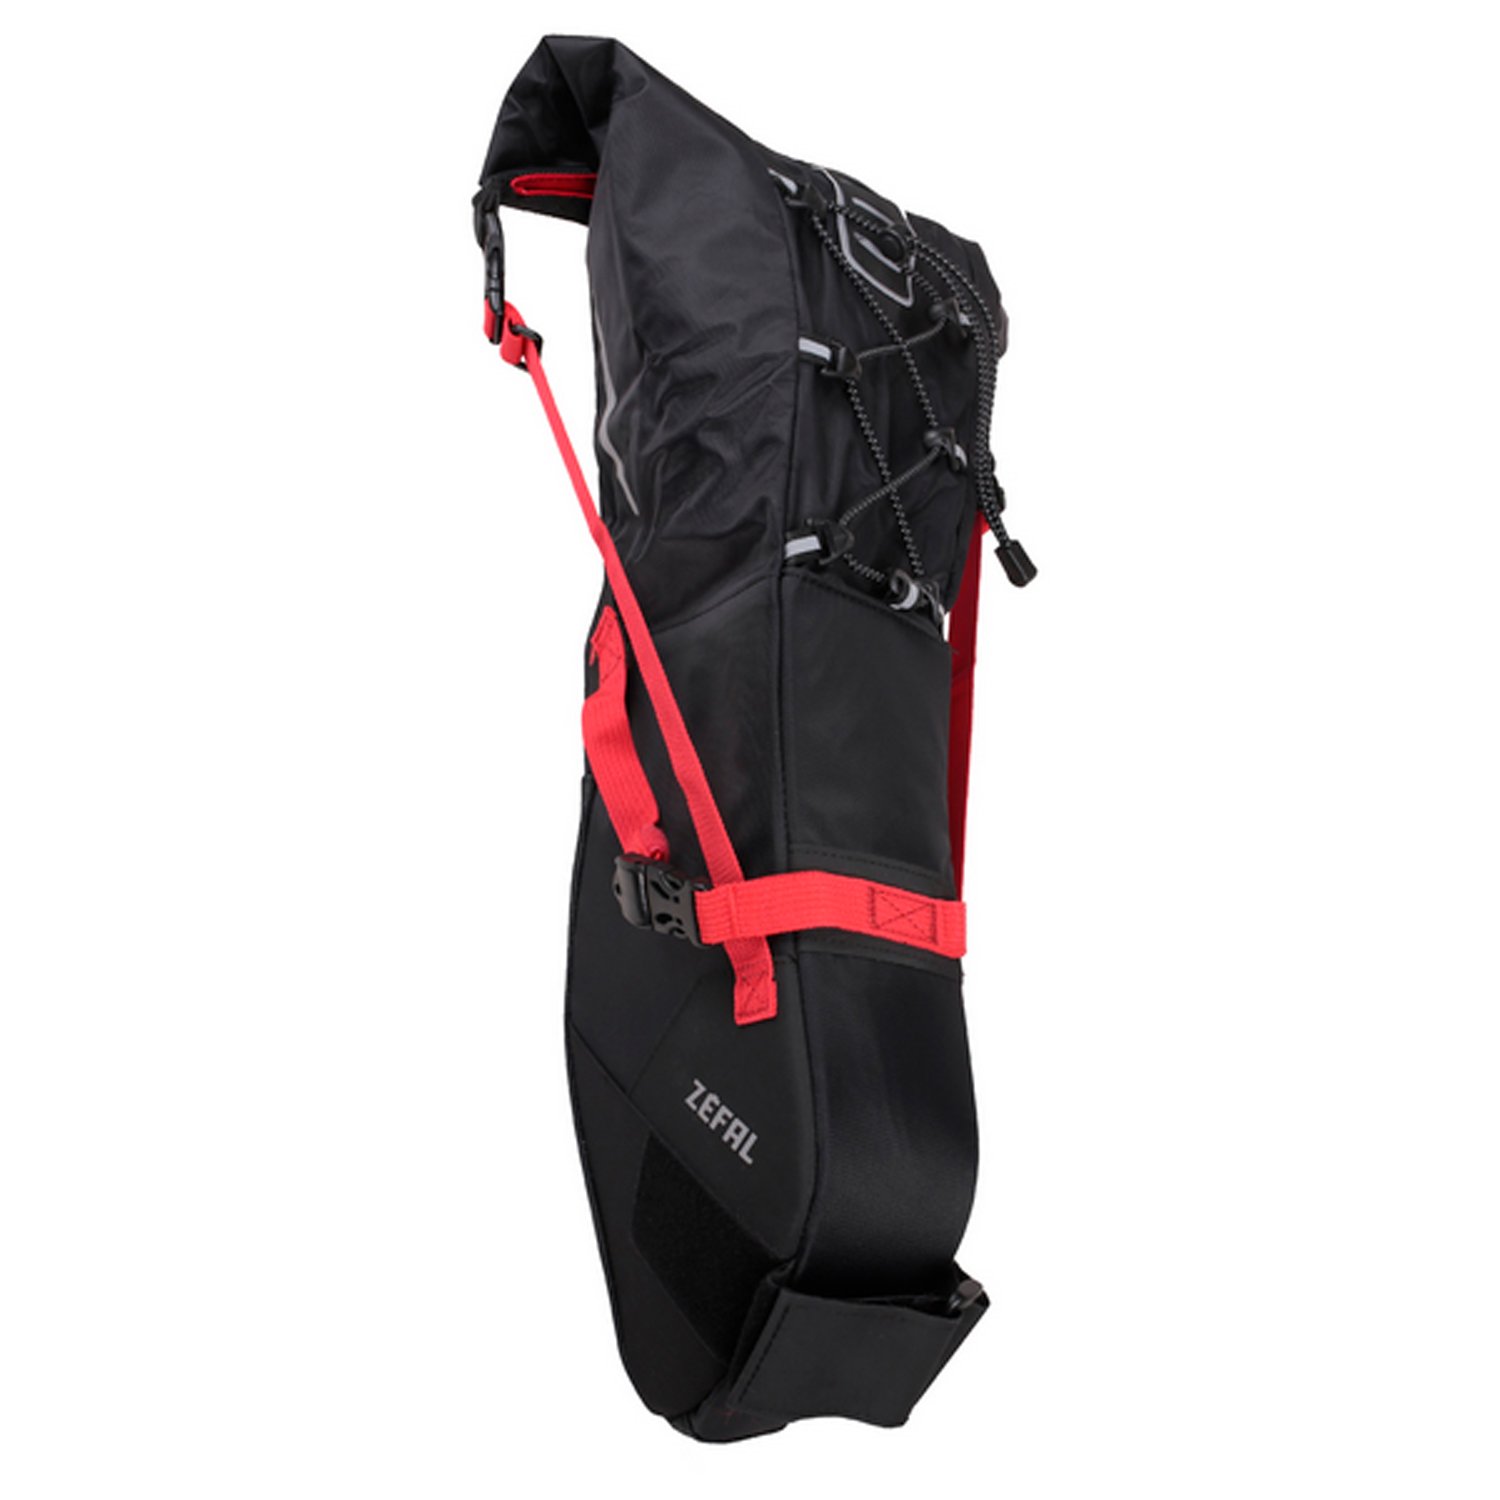 Сумка велосипедная Zefal Z Adventure R11 Saddle Bag, подседельная, объем от 5 до 11L, красный/черный, 2023, 7001 сумка велосипедная bontrager pro qc xs подседельная tcg 424911